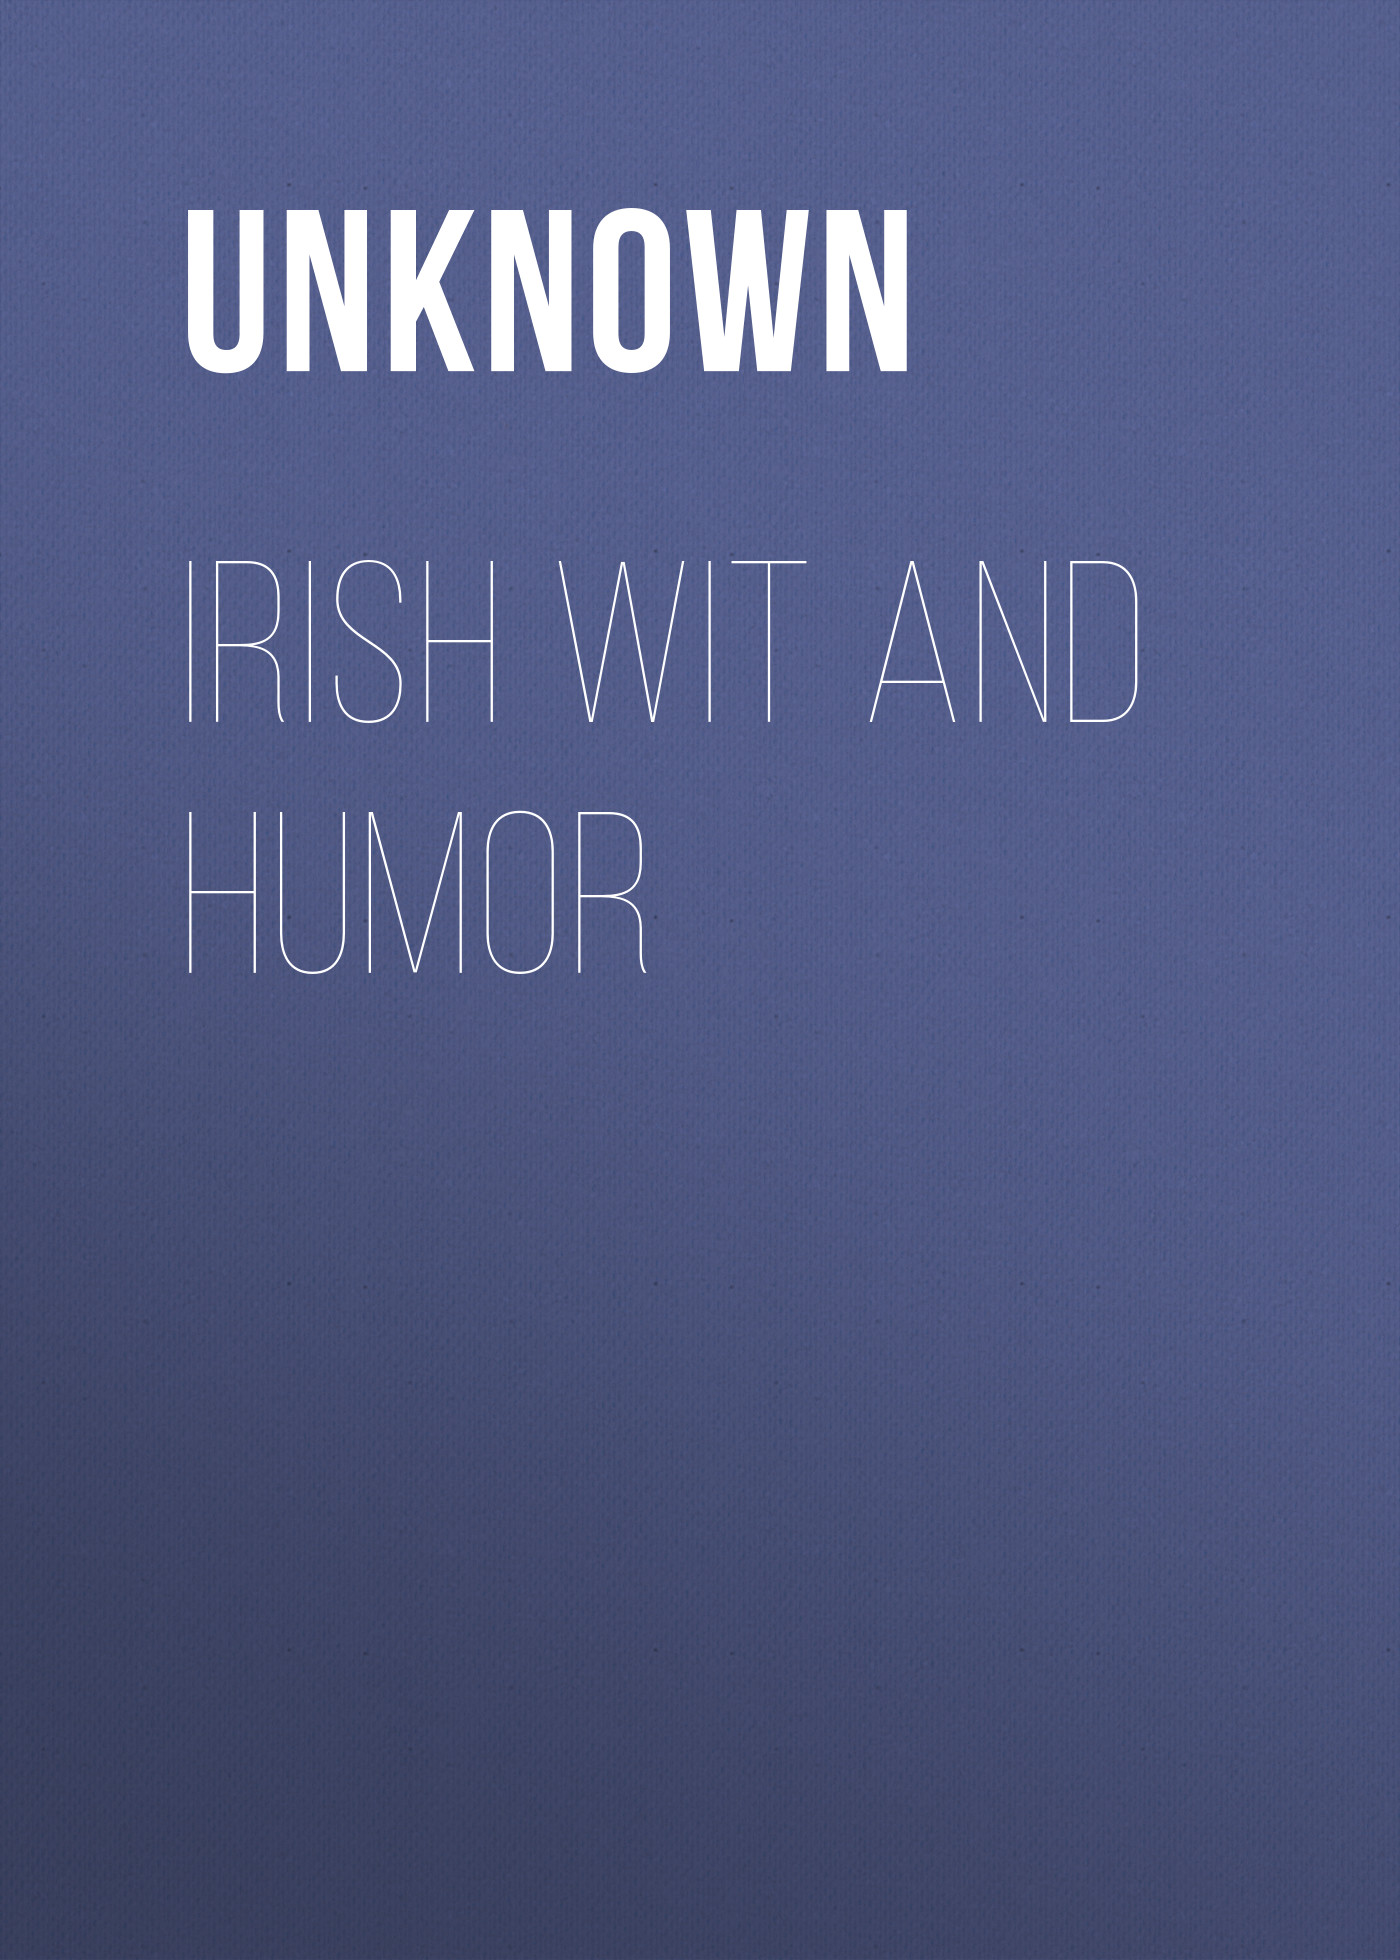 Книга Irish Wit and Humor из серии , созданная Unknown Unknown, может относится к жанру Книги о Путешествиях, Зарубежная старинная литература, Зарубежная классика. Стоимость электронной книги Irish Wit and Humor с идентификатором 35496303 составляет 0 руб.